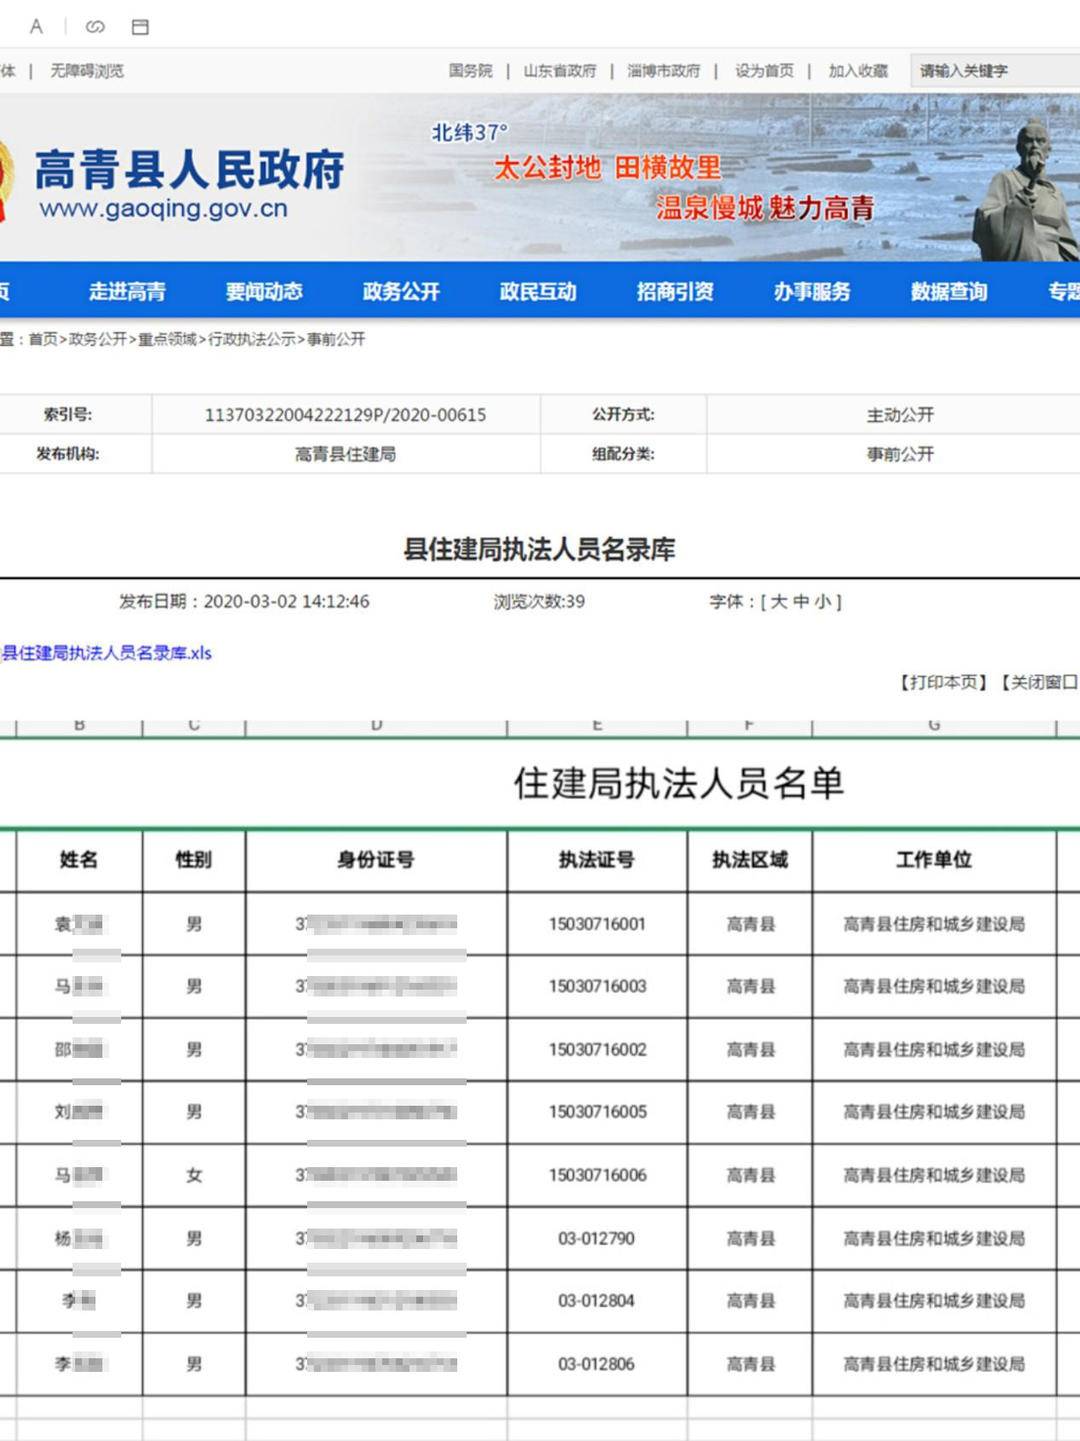 山东高青县政府官网泄露执法人员身份证号回应会尽快处理